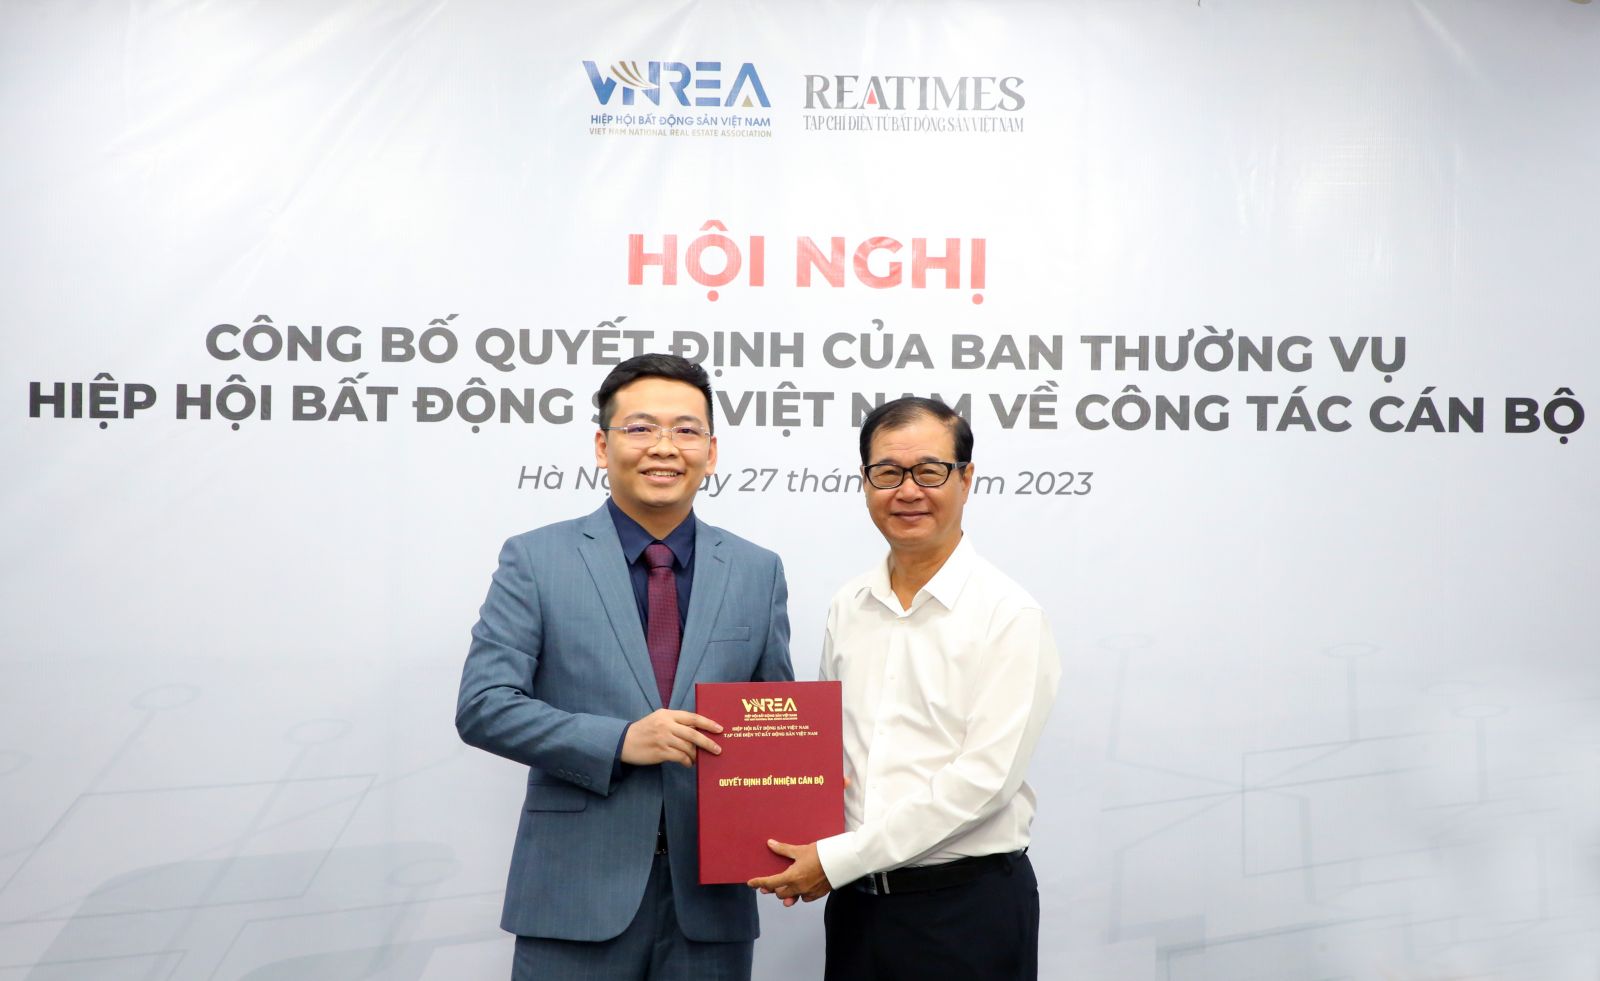 Nhà báo Nguyễn Thành Công giữ chức Phó Tổng Biên tập Tạp chí điện tử Bất động sản Việt Nam (Reatimes)- Ảnh 1.